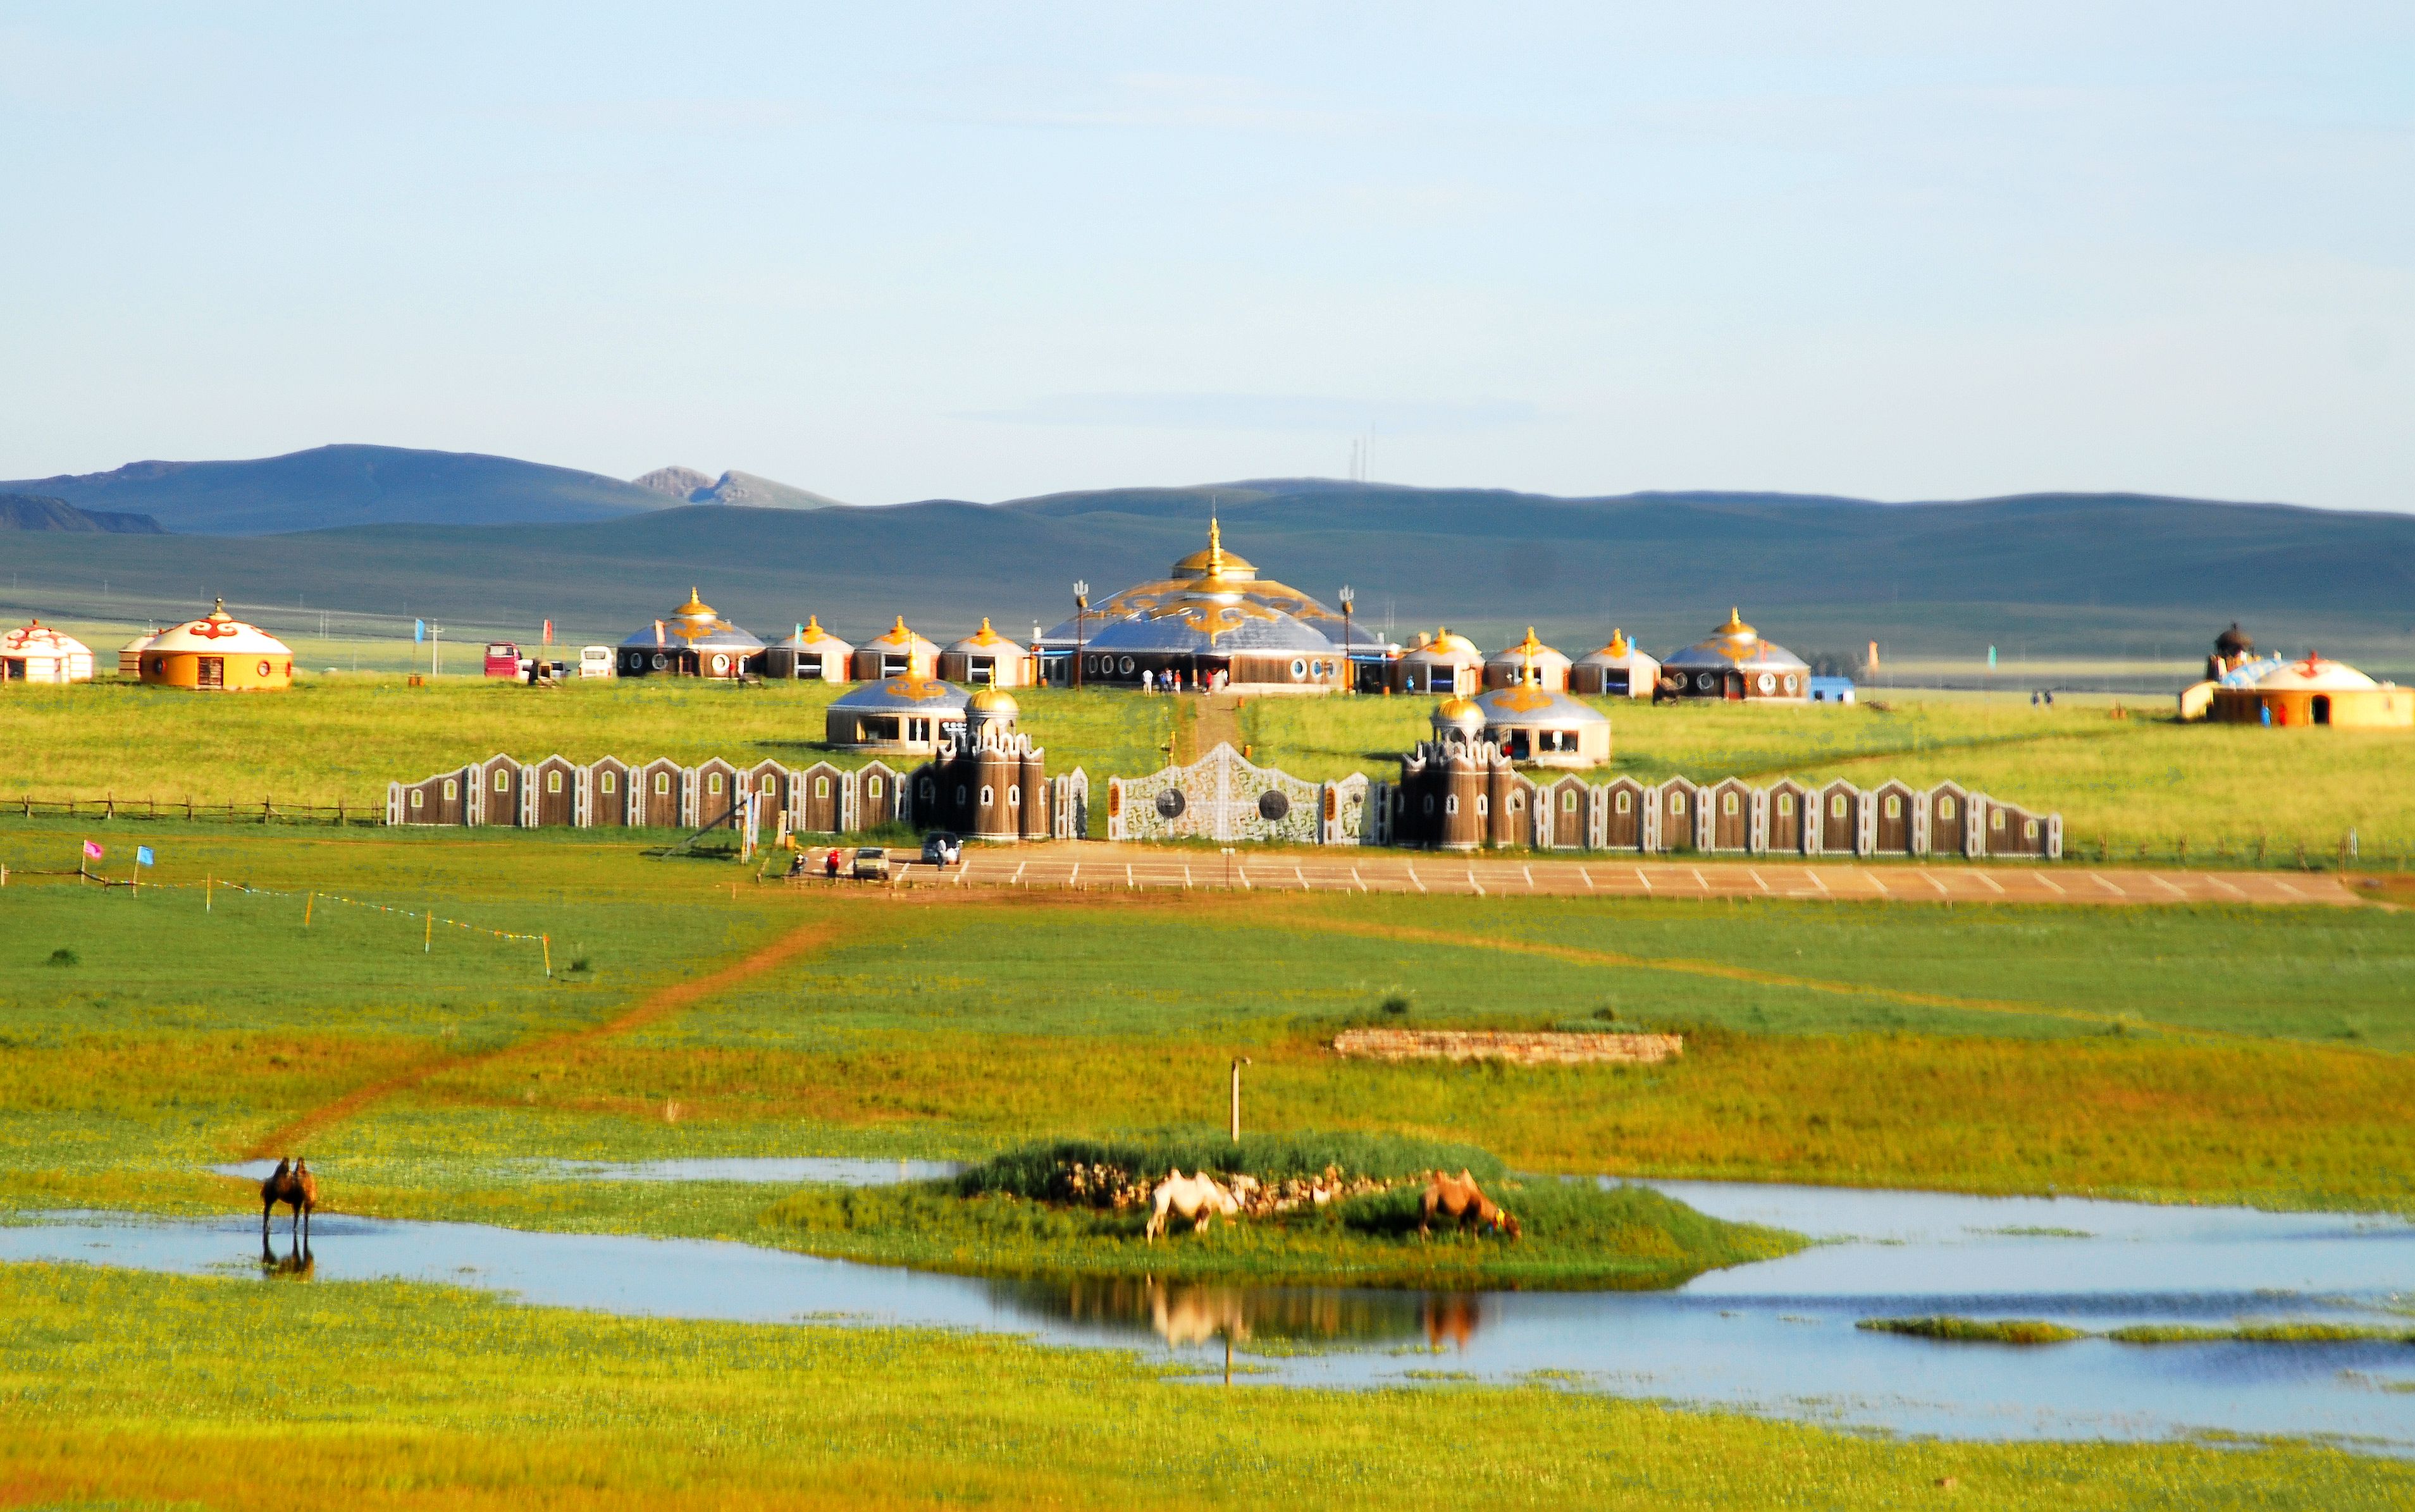 内蒙古·锡林郭勒·蒙古汗城文化旅游度假区